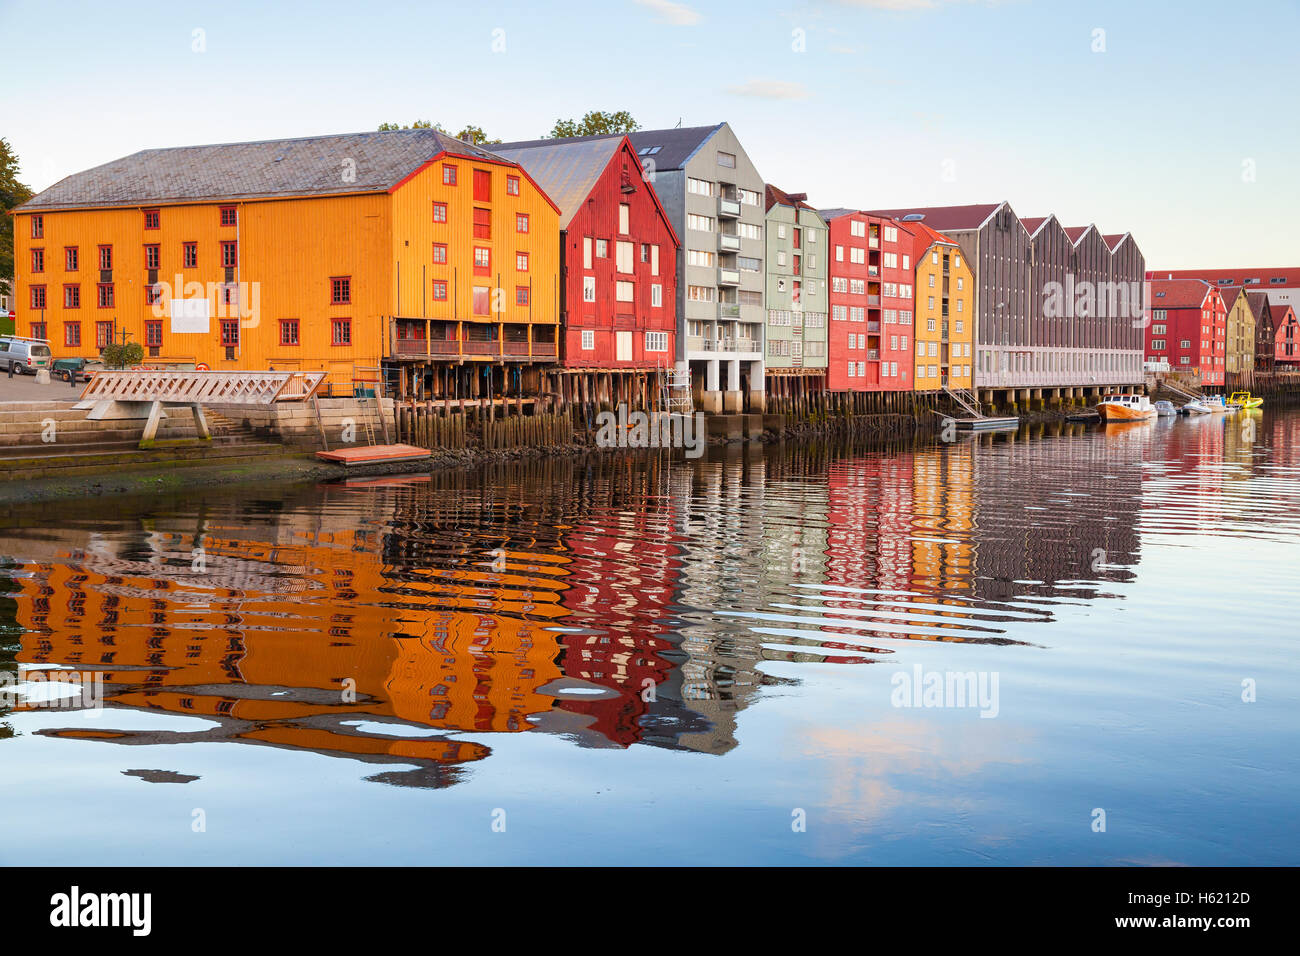 Vieilles maisons en bois coloré stand dans une rangée le long de la côte de la rivière. Trondheim, Norvège Banque D'Images